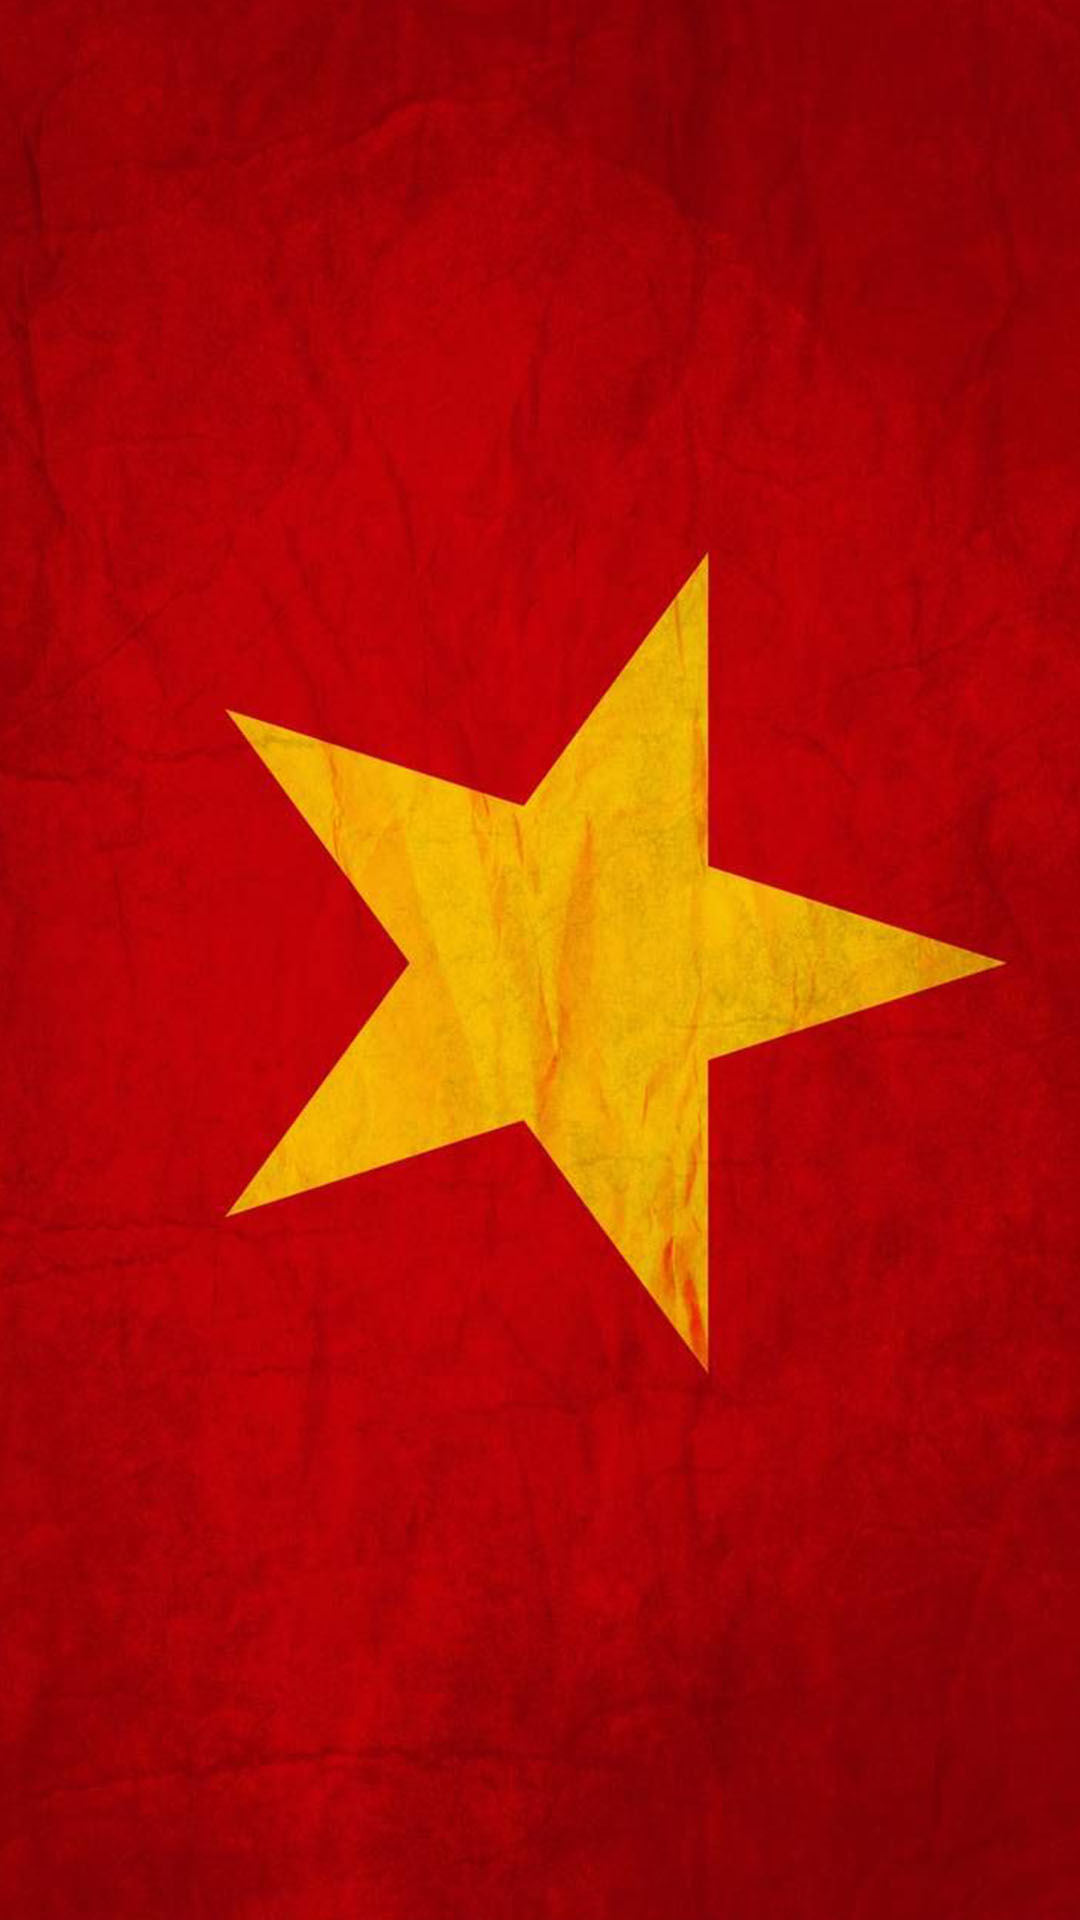 Dành cho những ai yêu thích sự trang trọng, hình nền cờ Việt Nam sẽ thổn thức trái tim bạn bởi sự đầy cảm hứng và kiêu hãnh. Biểu tượng quốc gia được tái hiện rõ ràng qua những chi tiết tinh tế hơn bao giờ hết.